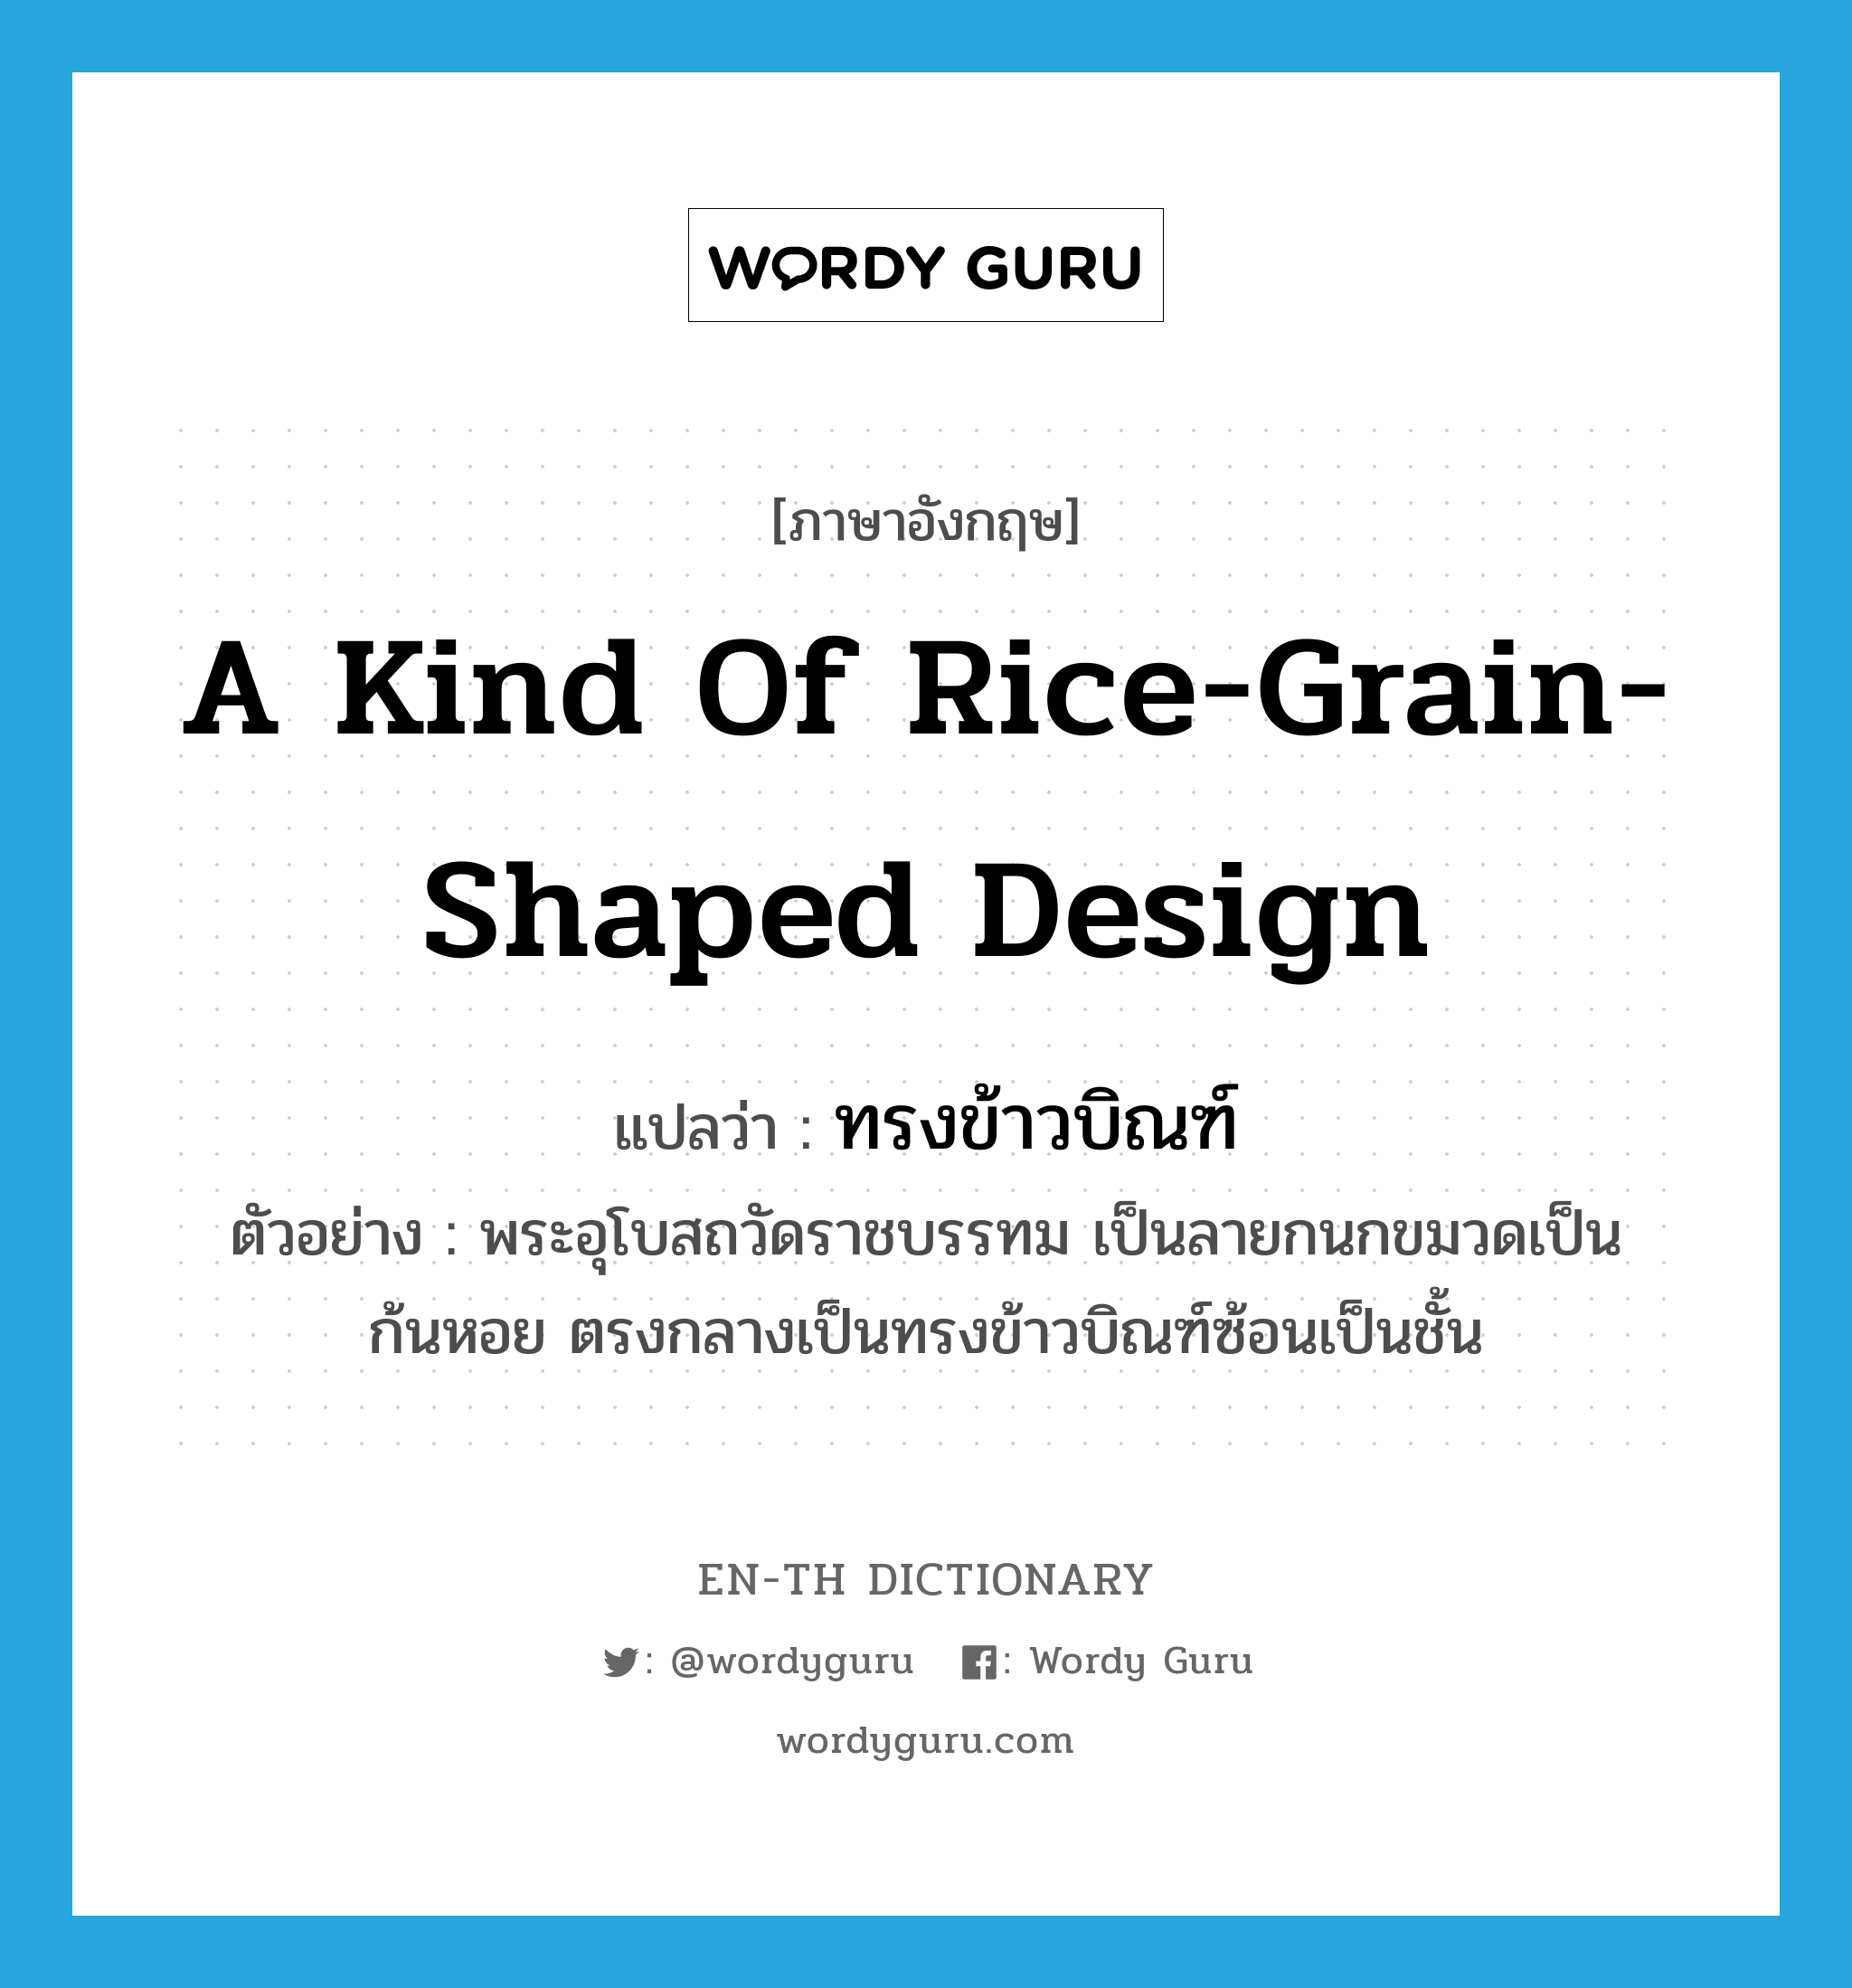 a kind of rice-grain-shaped design แปลว่า?, คำศัพท์ภาษาอังกฤษ a kind of rice-grain-shaped design แปลว่า ทรงข้าวบิณฑ์ ประเภท N ตัวอย่าง พระอุโบสถวัดราชบรรทม เป็นลายกนกขมวดเป็นก้นหอย ตรงกลางเป็นทรงข้าวบิณฑ์ซ้อนเป็นชั้น หมวด N